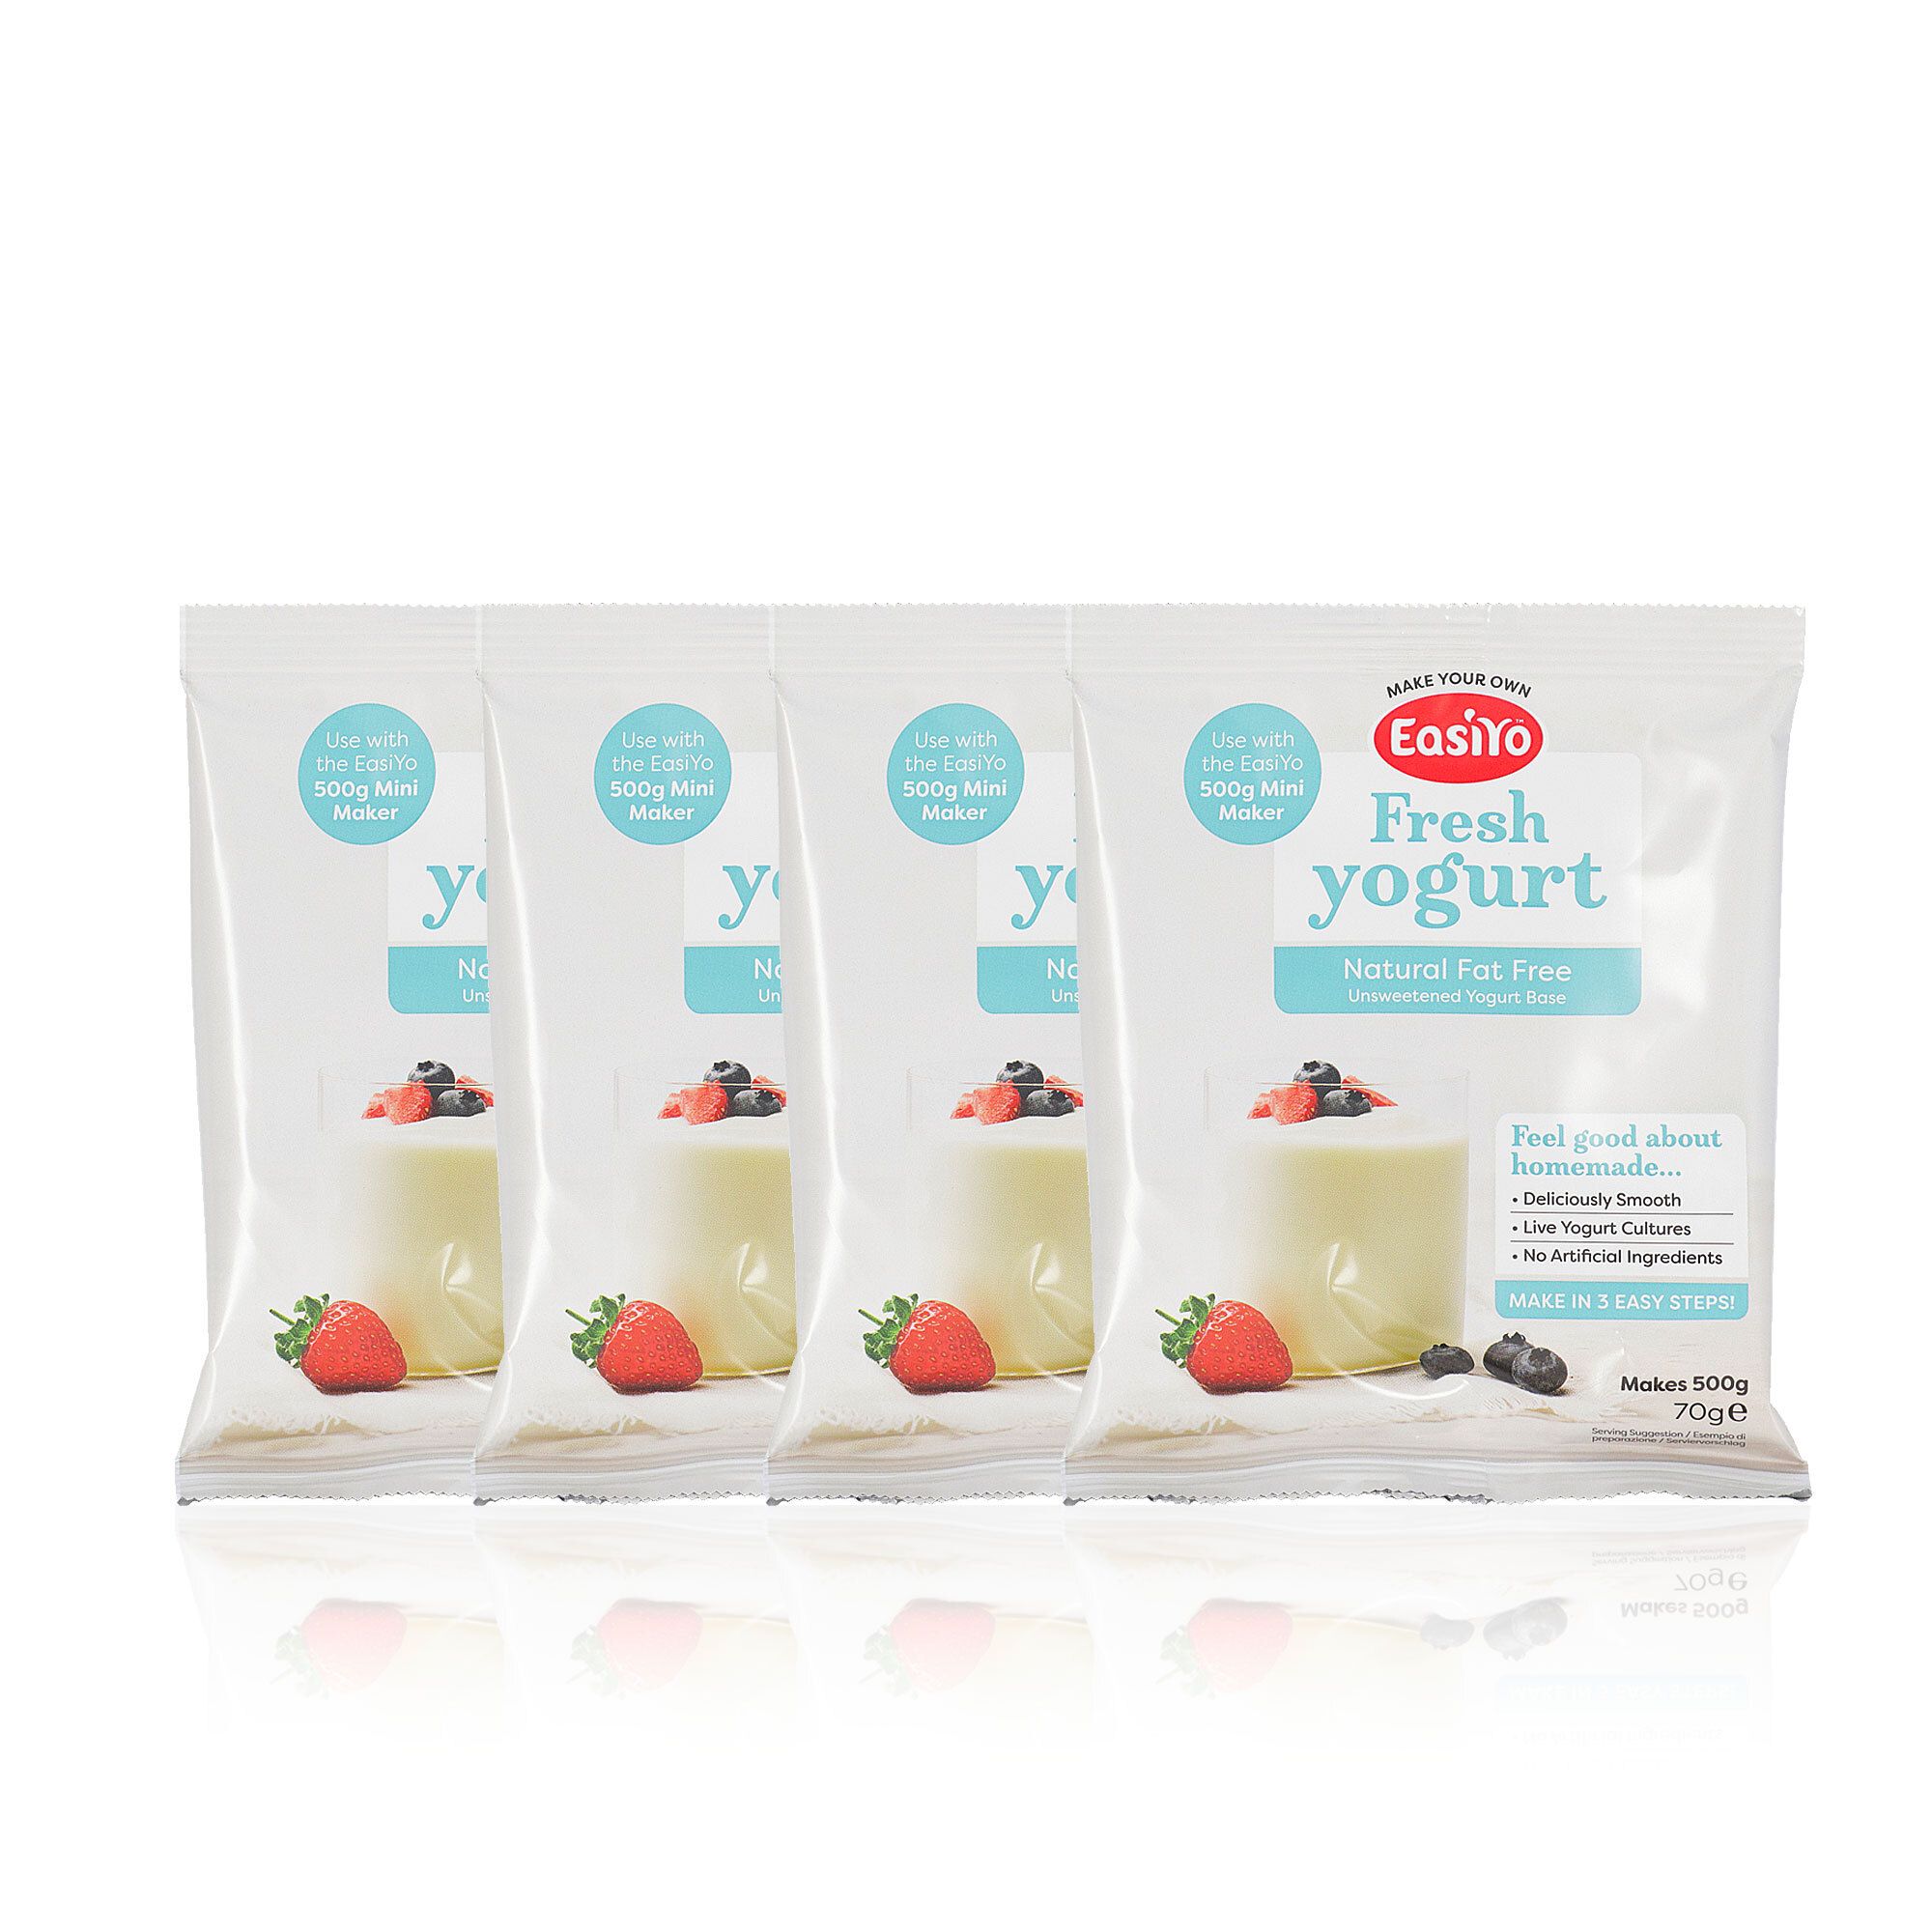 4 sacchetti per 500g di yogurt: 1 gusto a scelta